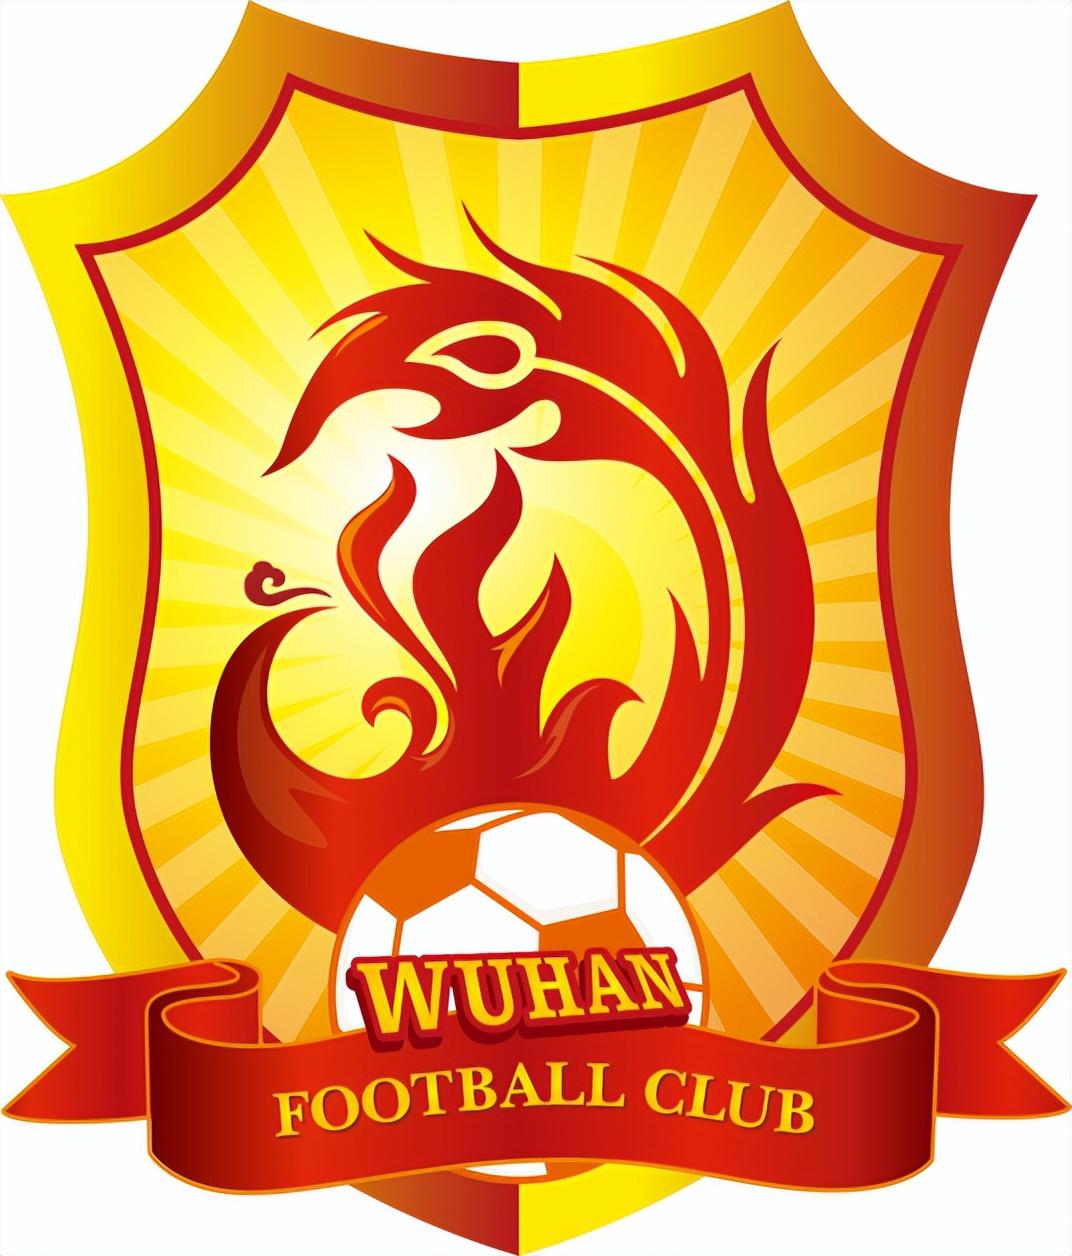 2002年以后退出的中国足坛的俱乐部哪些是你的意难平(19)